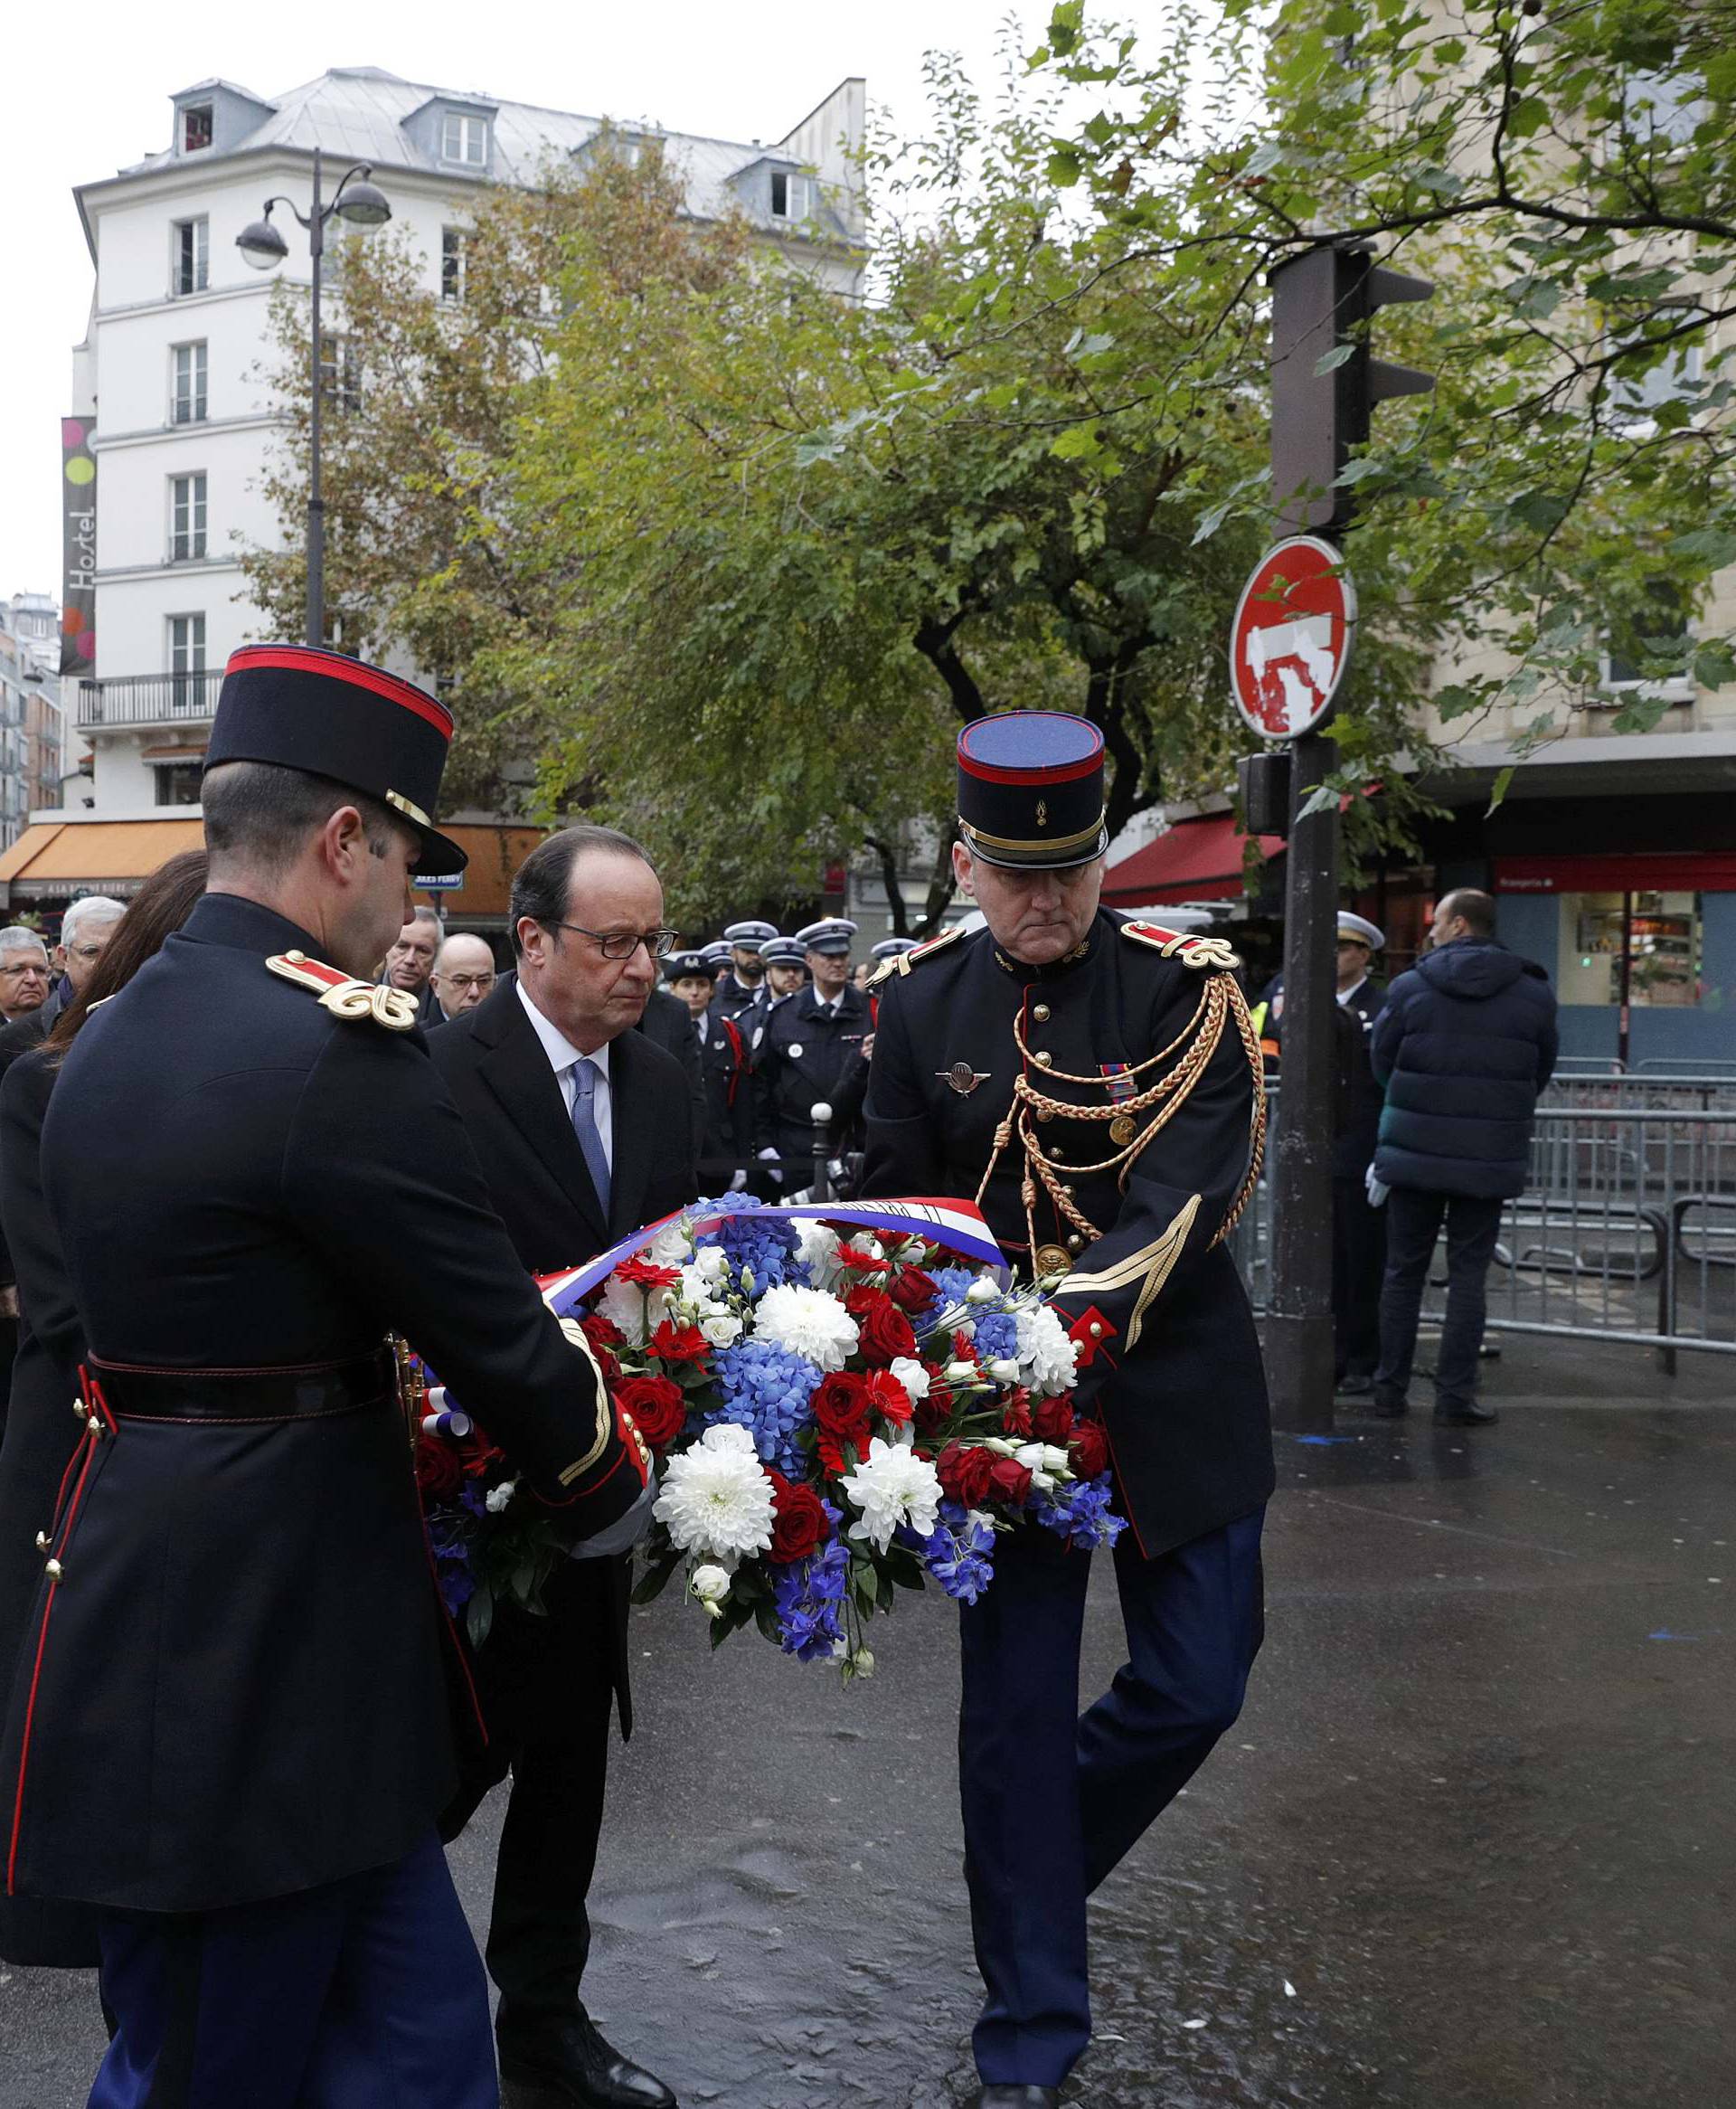 French President Francois Hollande and Paris Mayor Anne Hidalgo unveil a commemorative plaque next to the "A La Bonne Biere" cafe